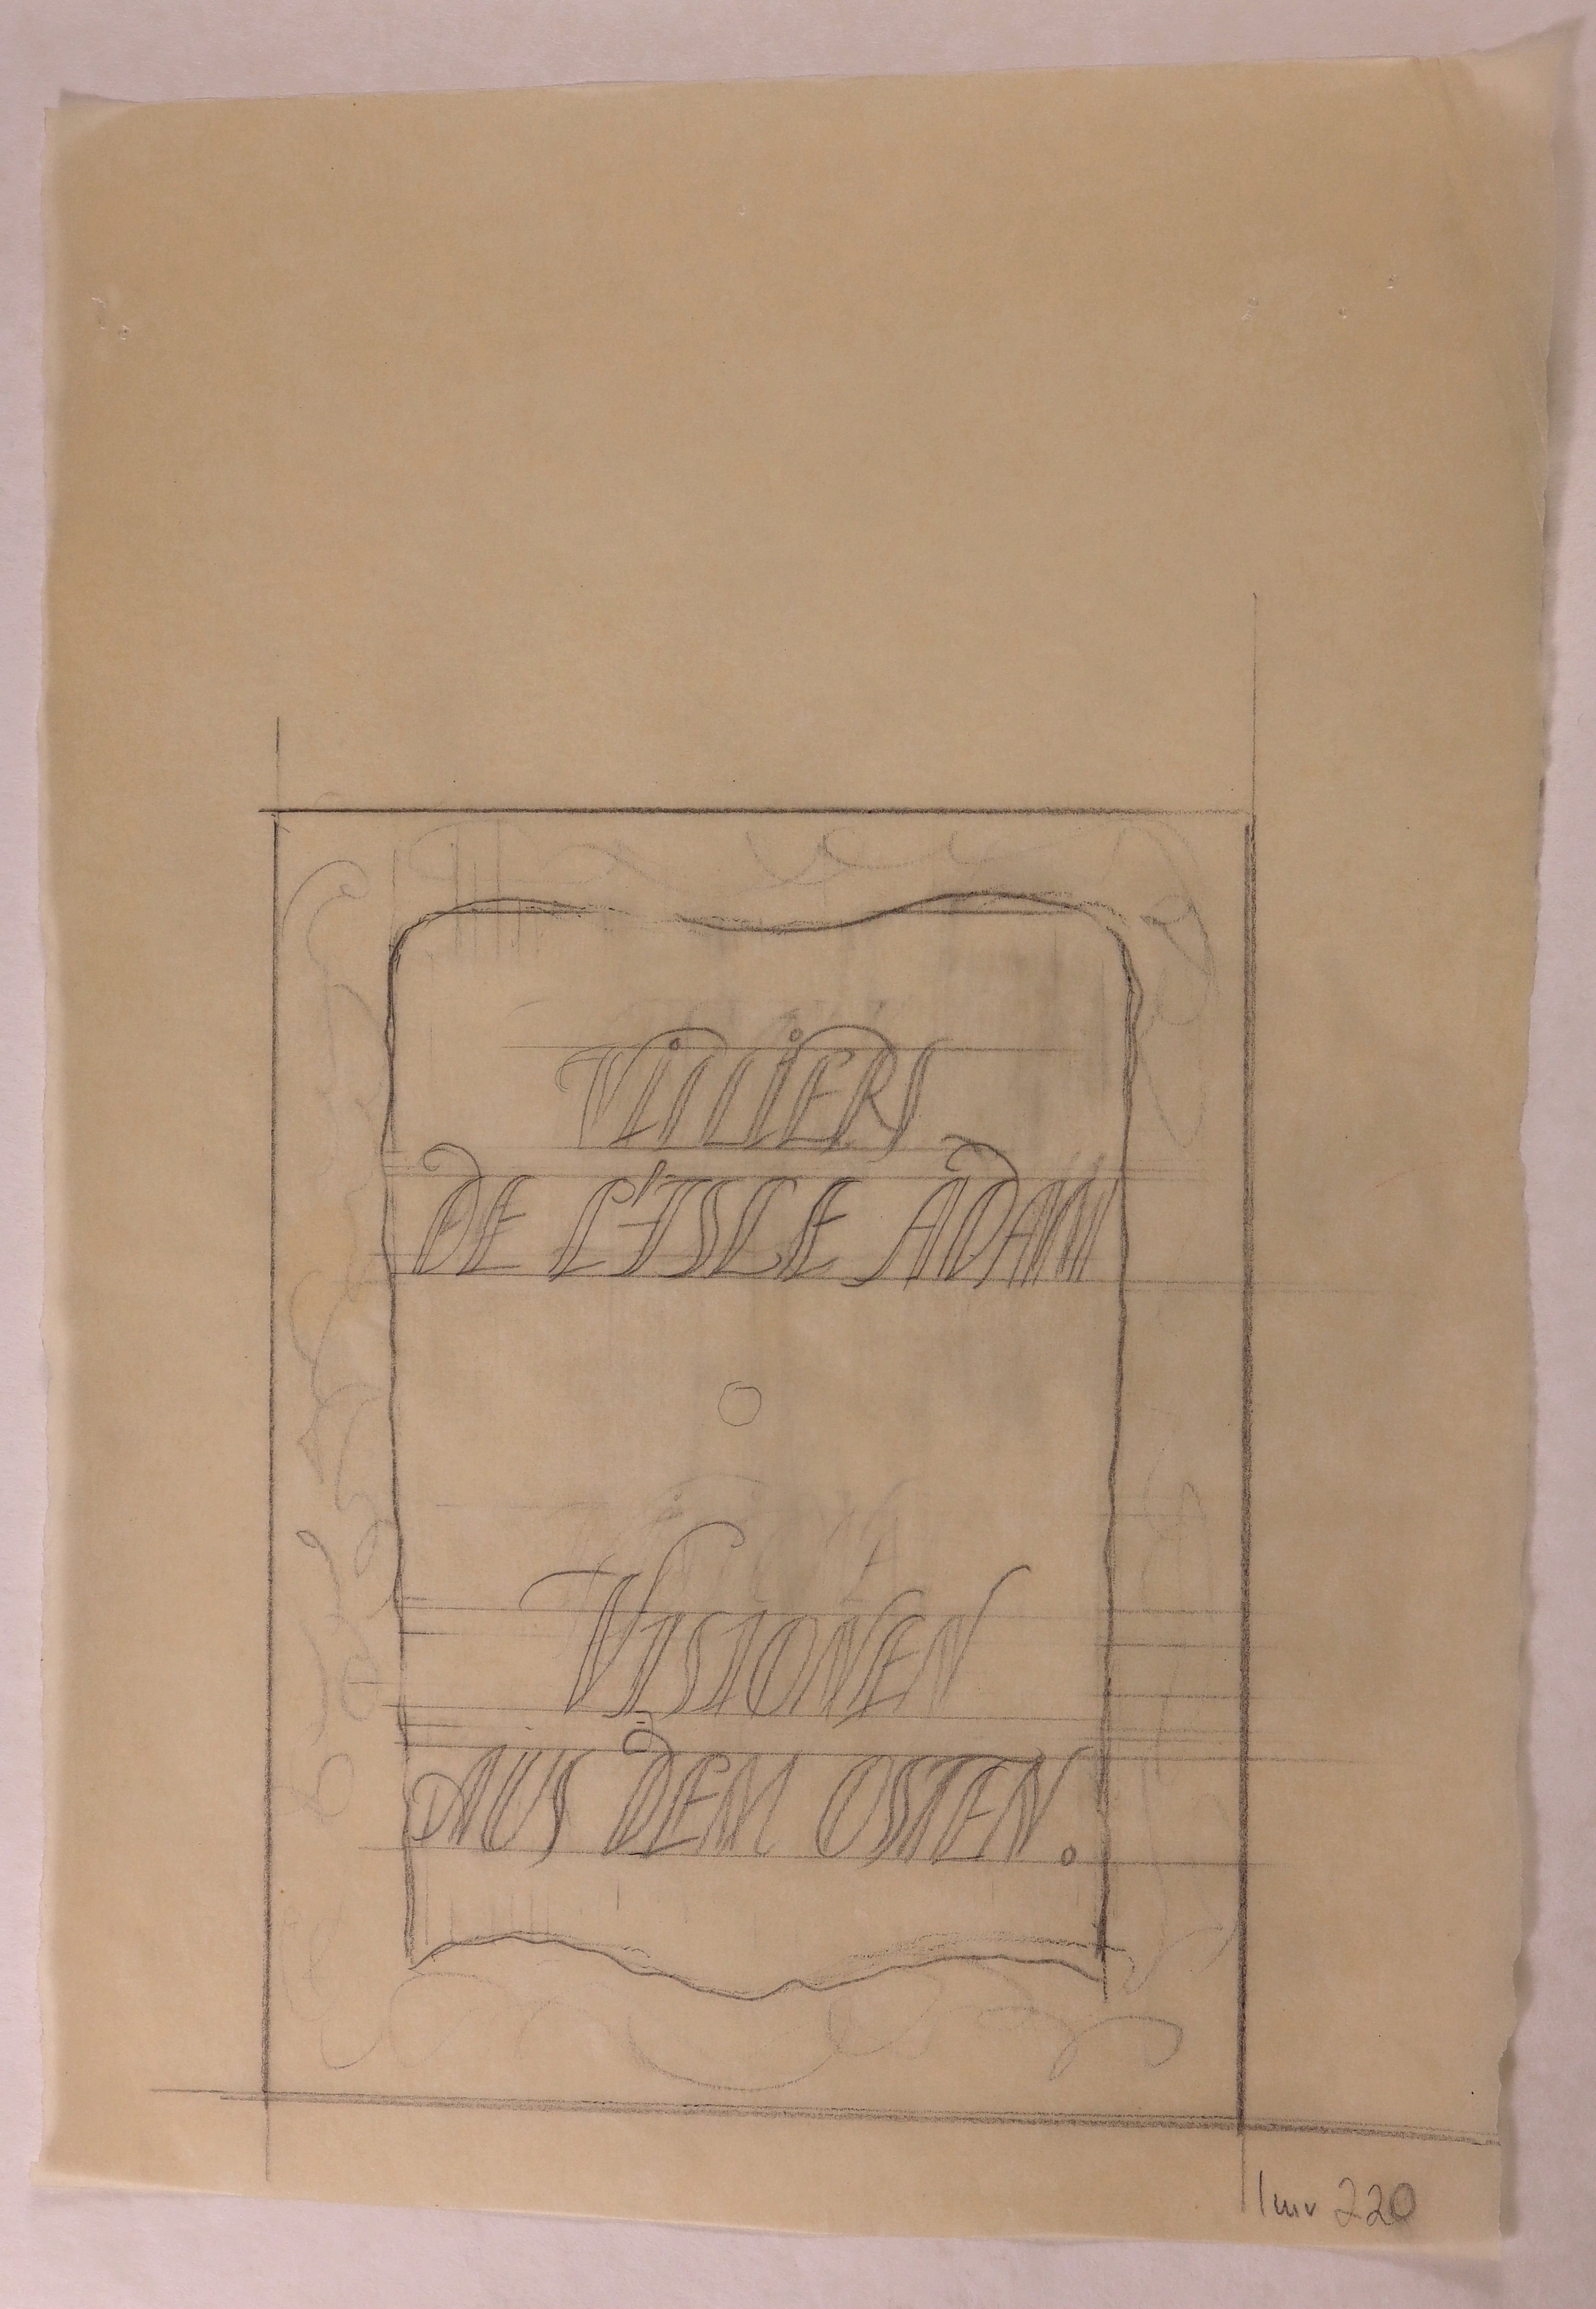 Entwurf für das Titelblatt des Buches "Visionen aus dem Osten" von Villiers de L’Isle-Adam, 1921 (mit ornamentaler Rahmung) (Stift Heiligenkreuz CC BY-NC-SA)